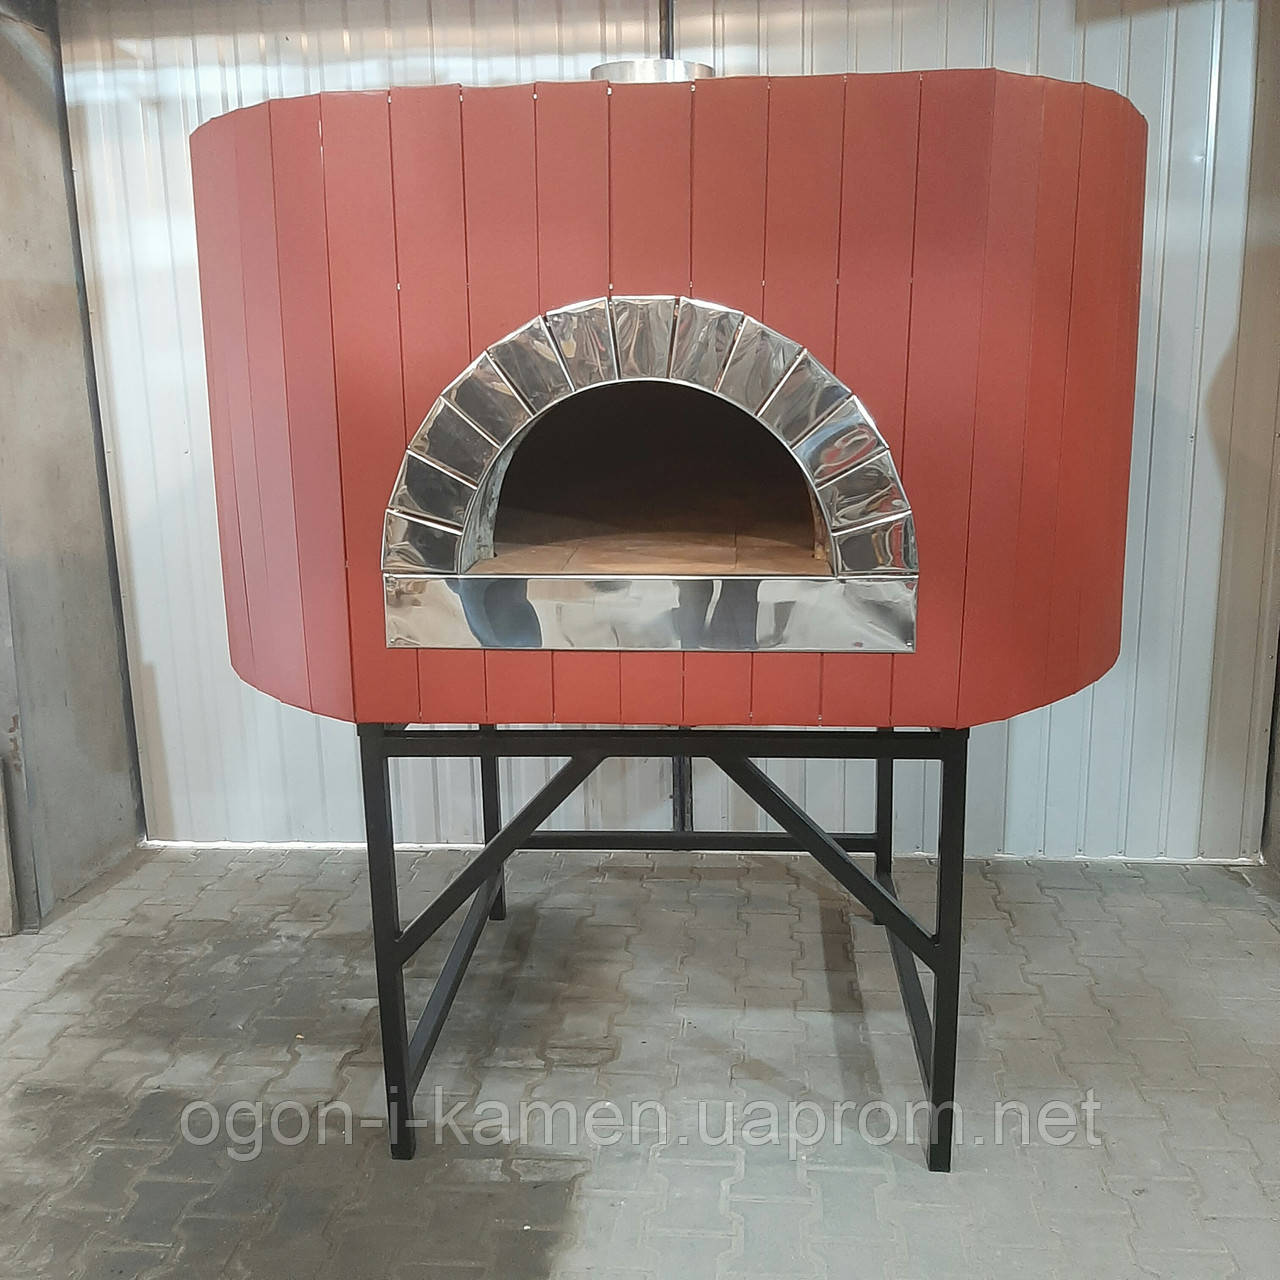 Піч для піци Speranza140. металева облицювання, литий купол